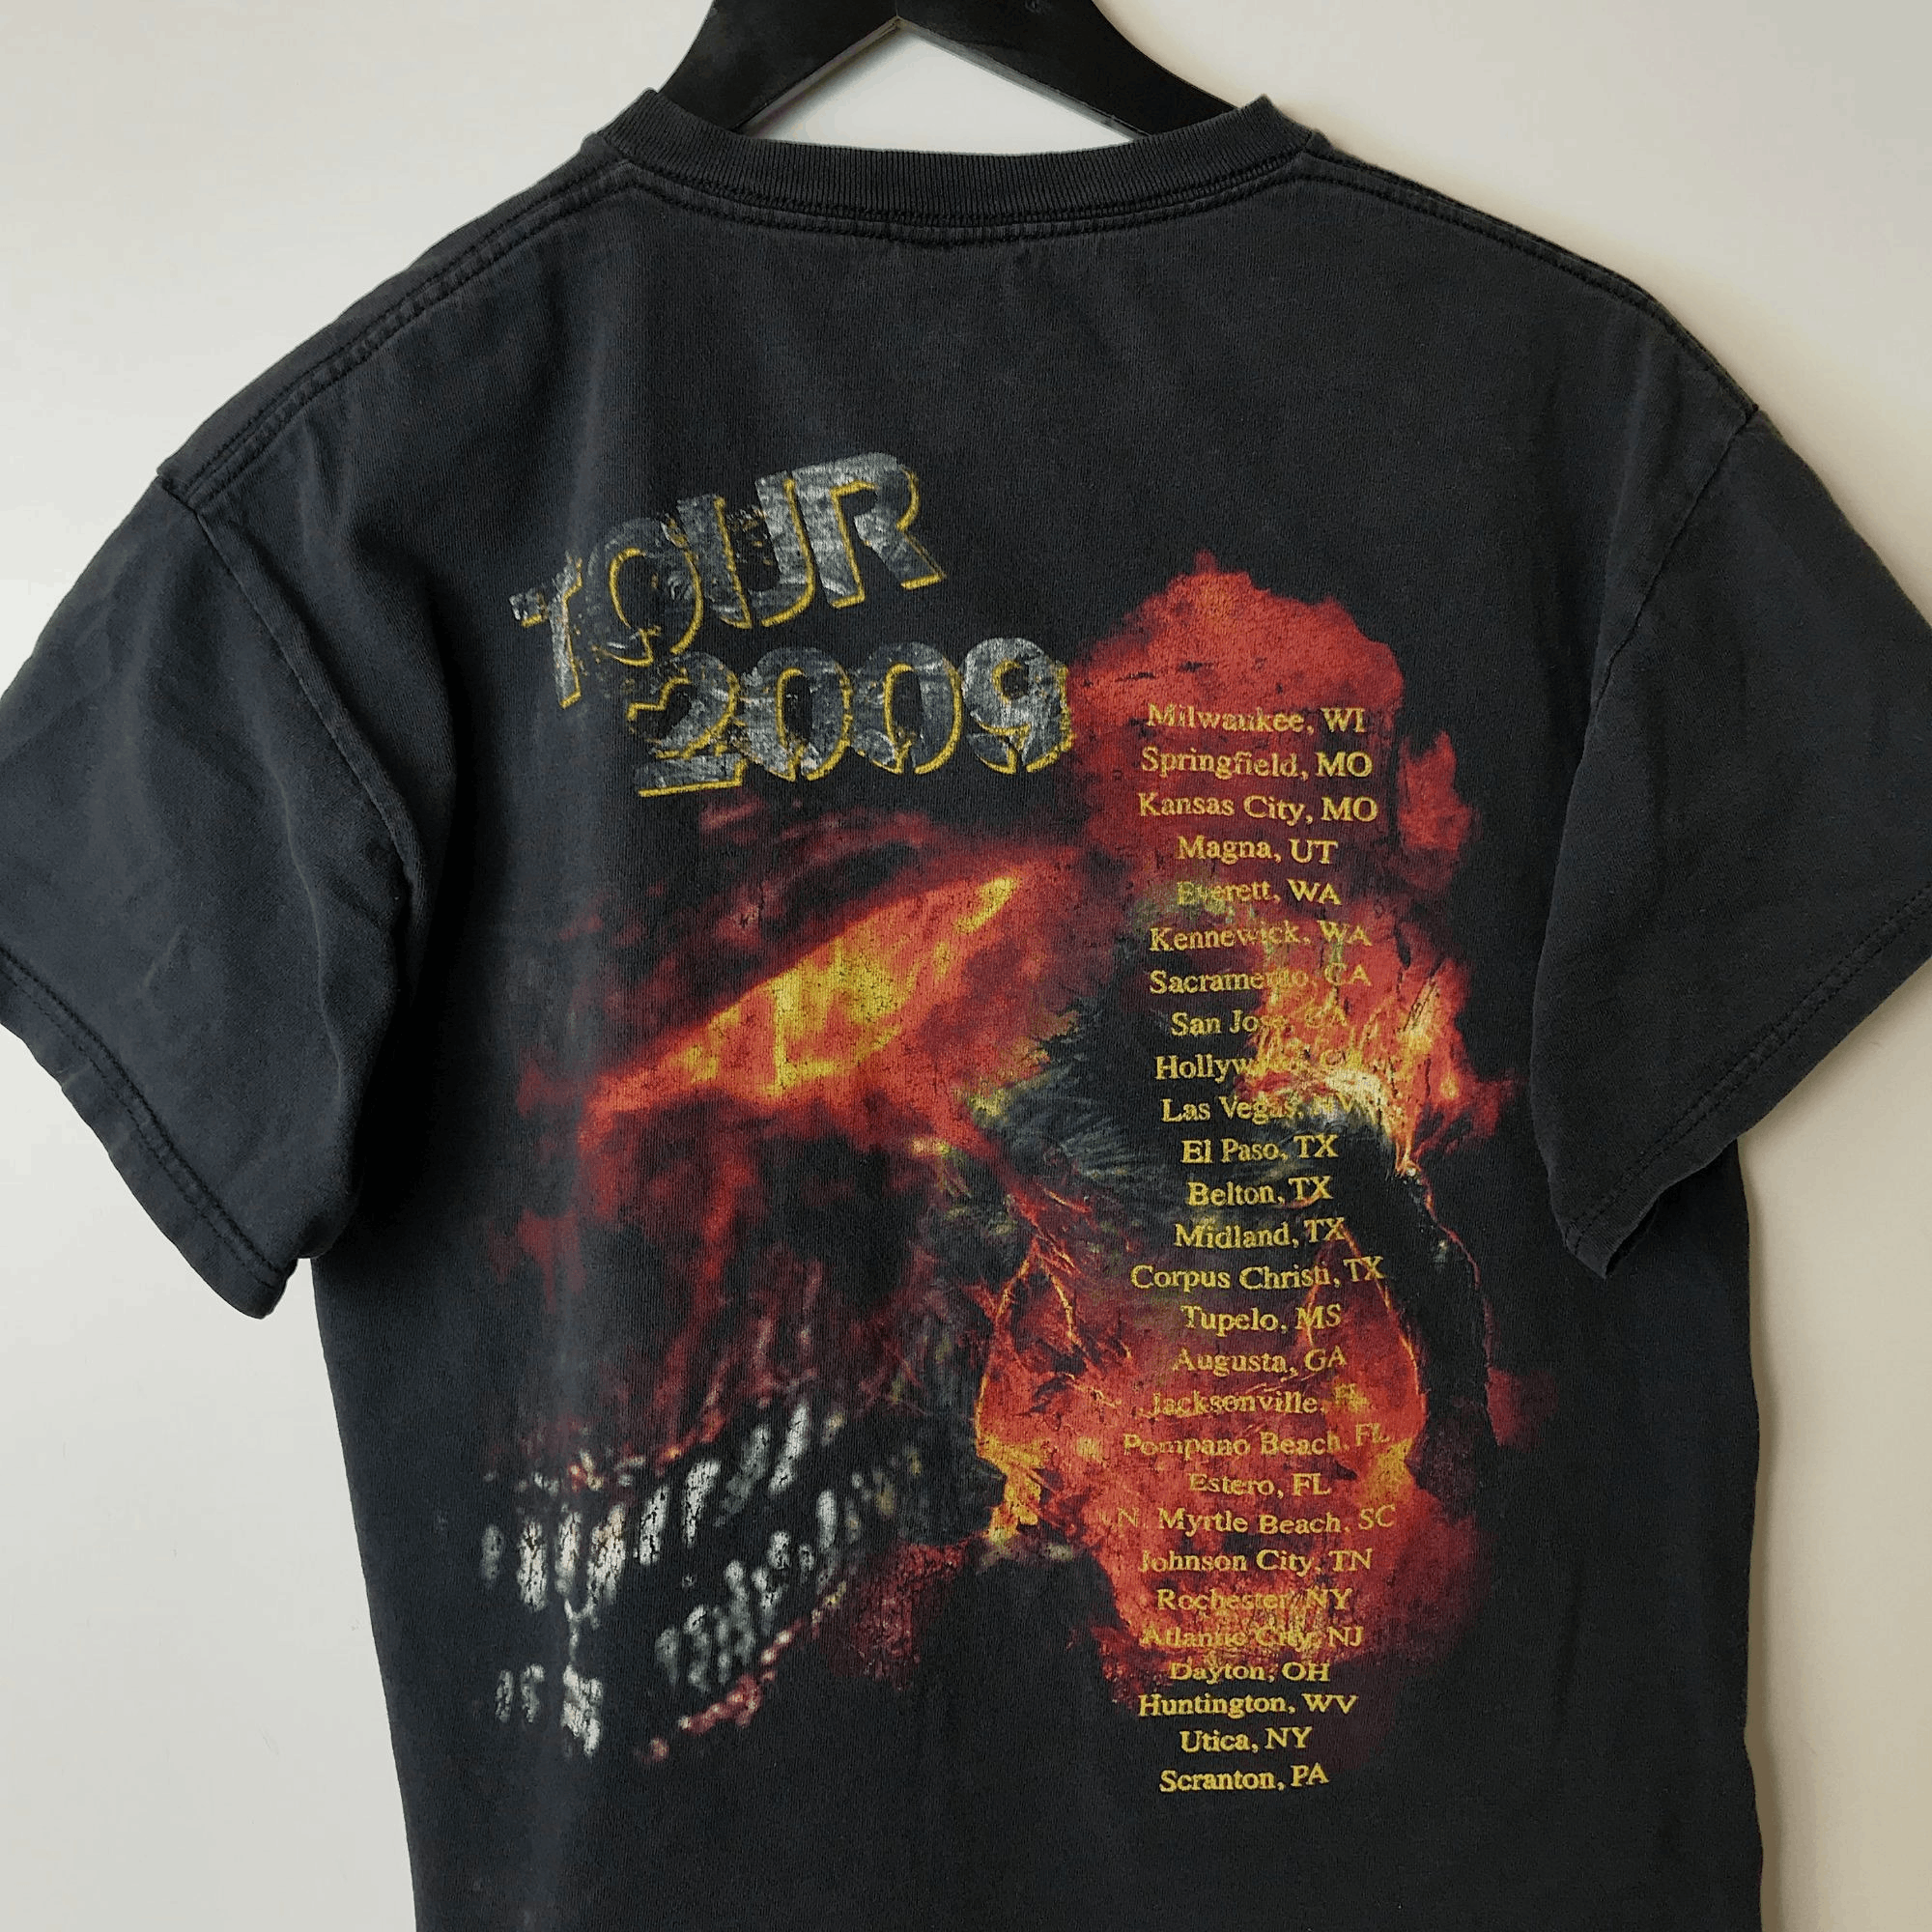 Delta 2009 Vintage Disturbed Indestructible Tour T Shirt 00s Adult Size US S / EU 44-46 / 1 - 6 Thumbnail